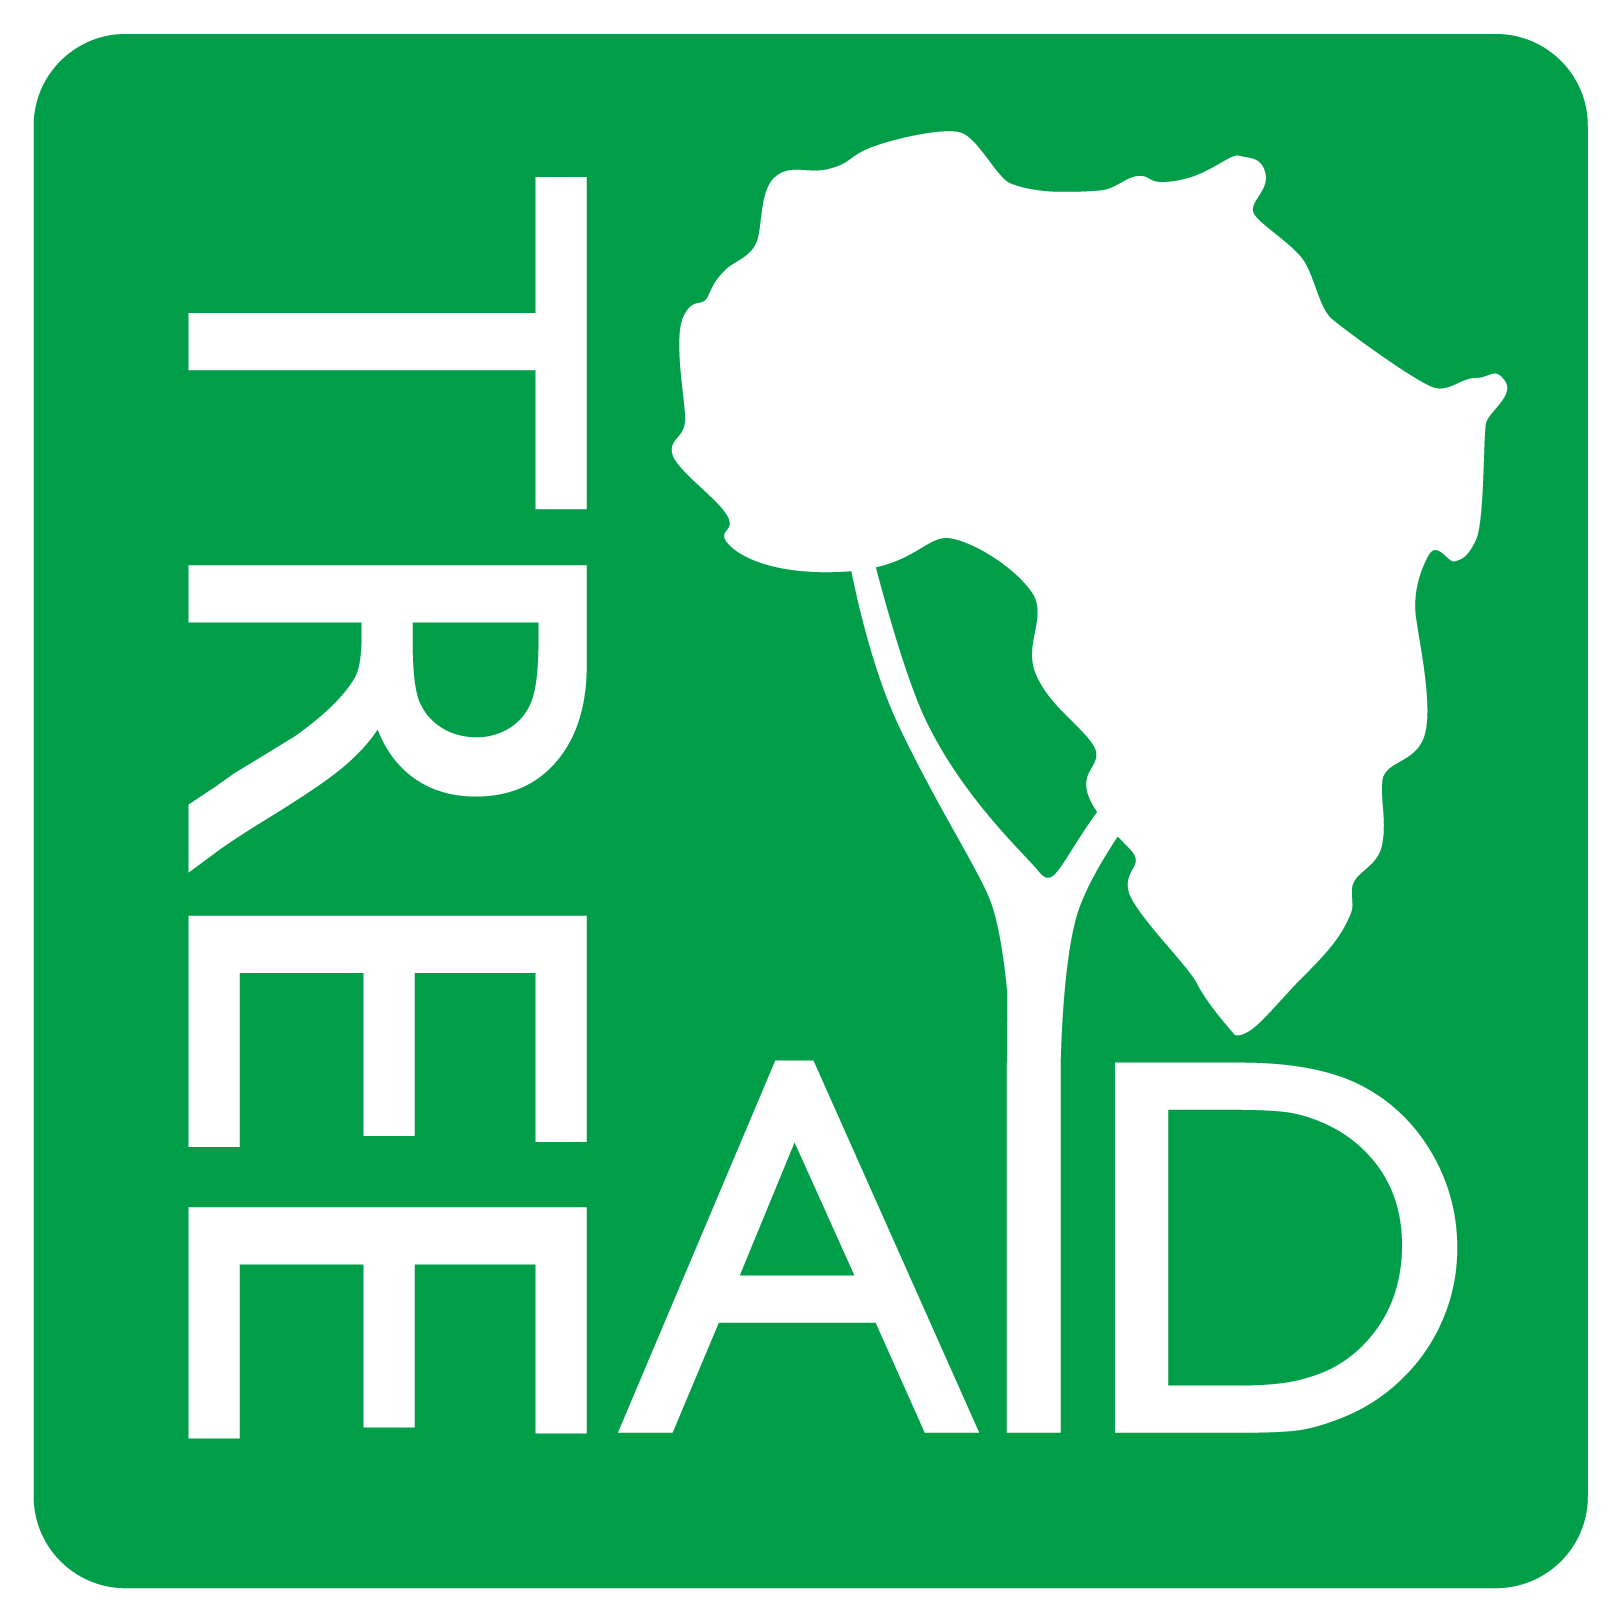 TREE AID logo.JPG